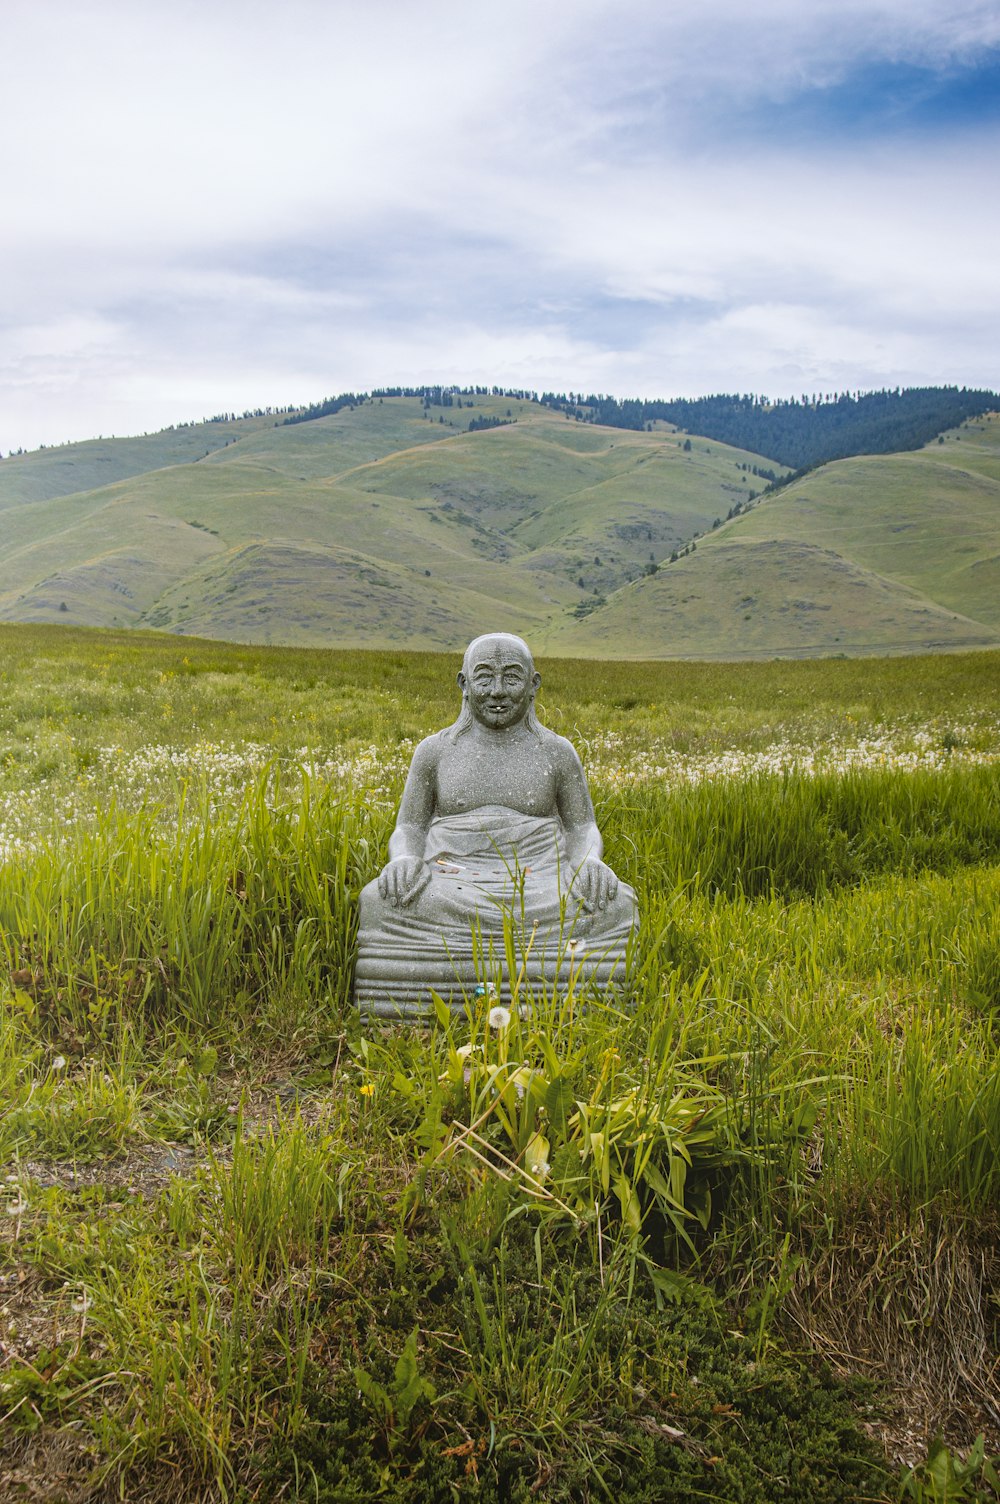 a statue in a grassy field